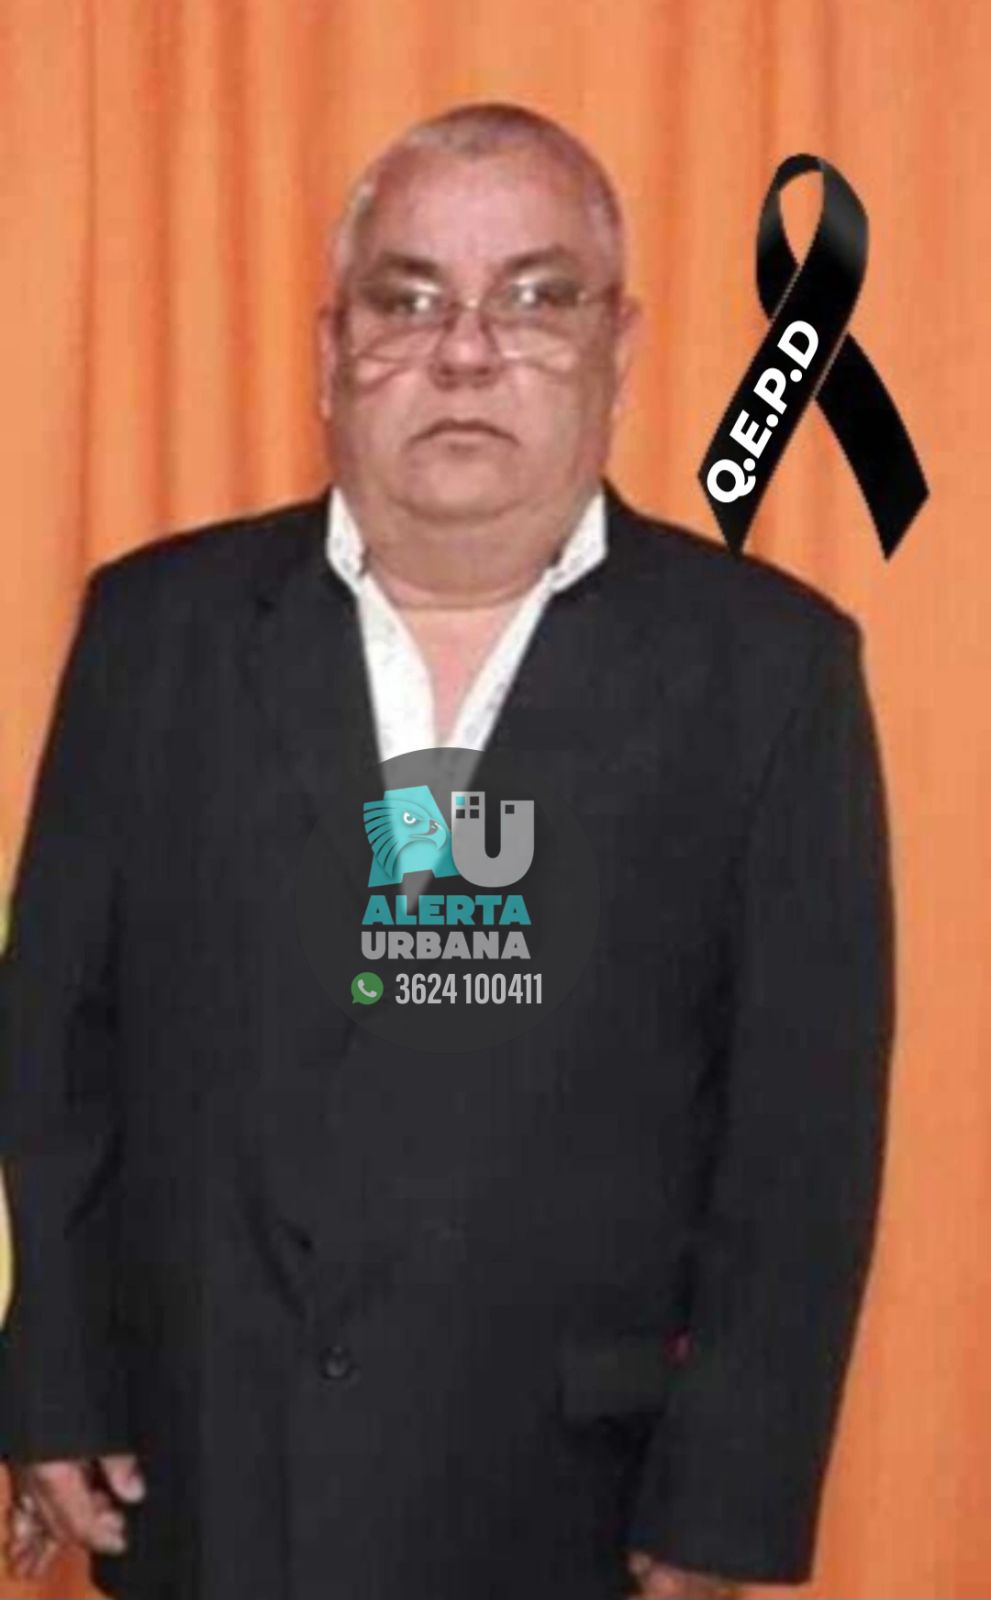 Pesar por el fallecimiento de Daniel “Pelin” Ferreyra, Suboficial Mayor (R) de la Policía de la provincia del Chaco